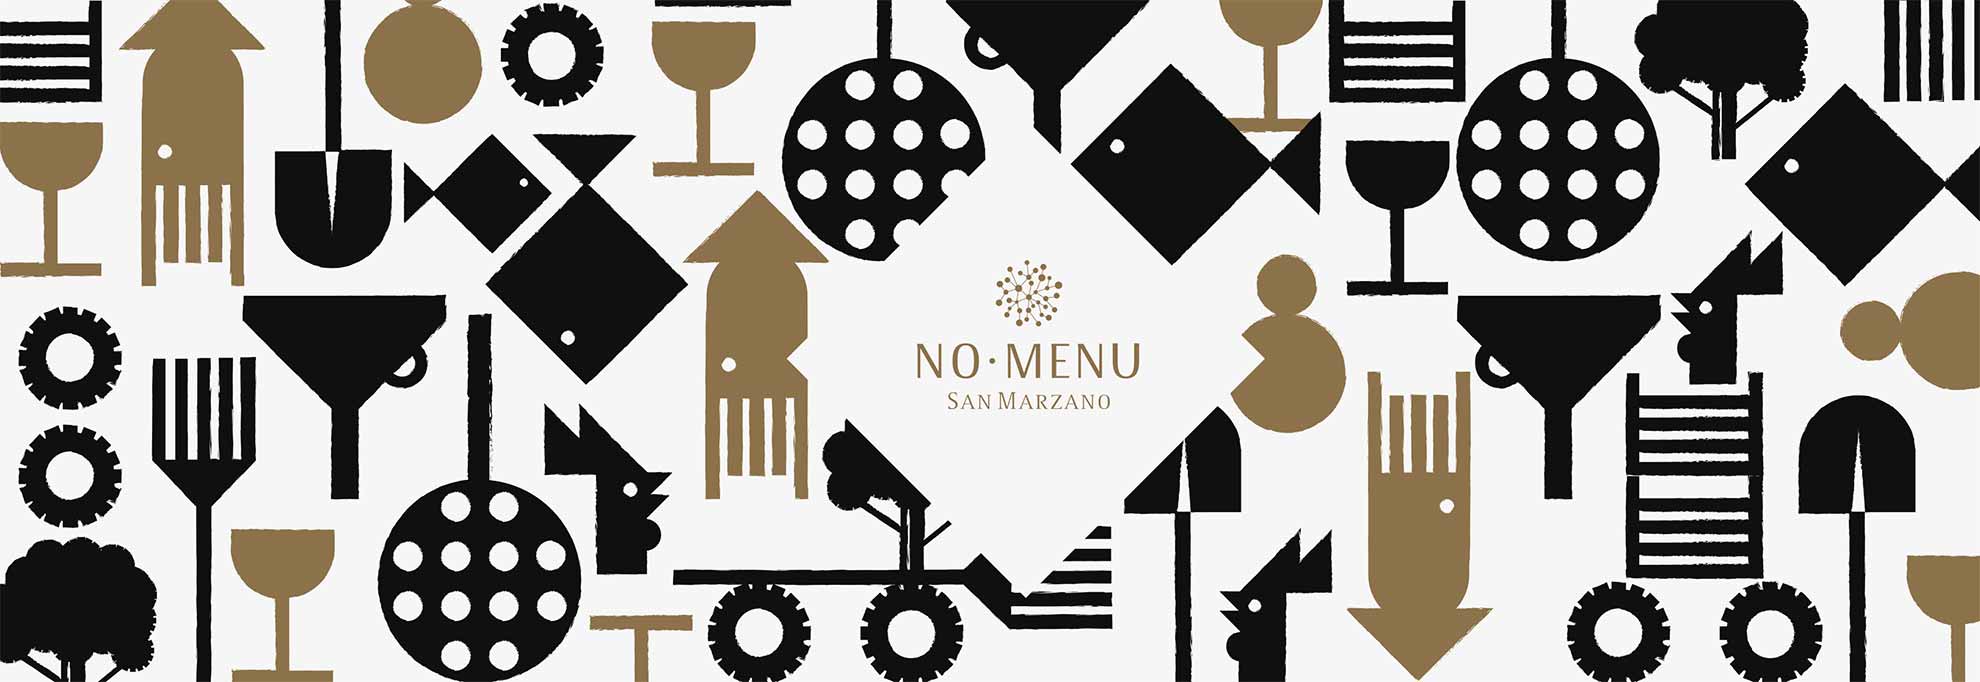 No menù San Marzano